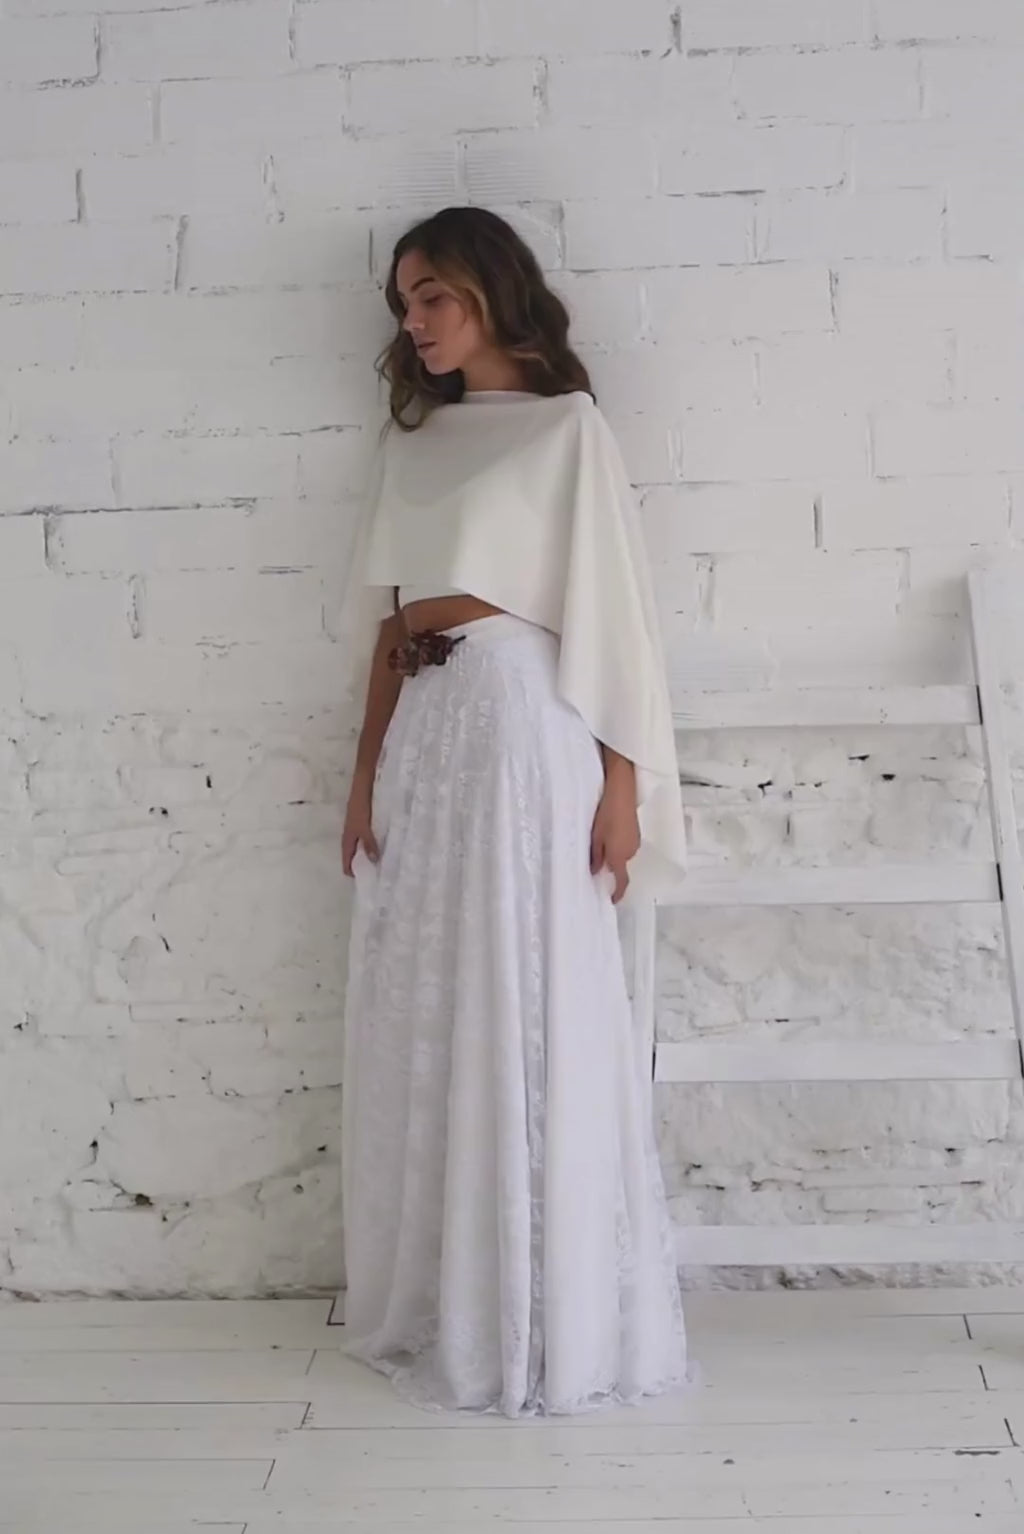 Video de modelo de perfil apoyada a la pared y andando a cámara con vestido de novia con capa corta.